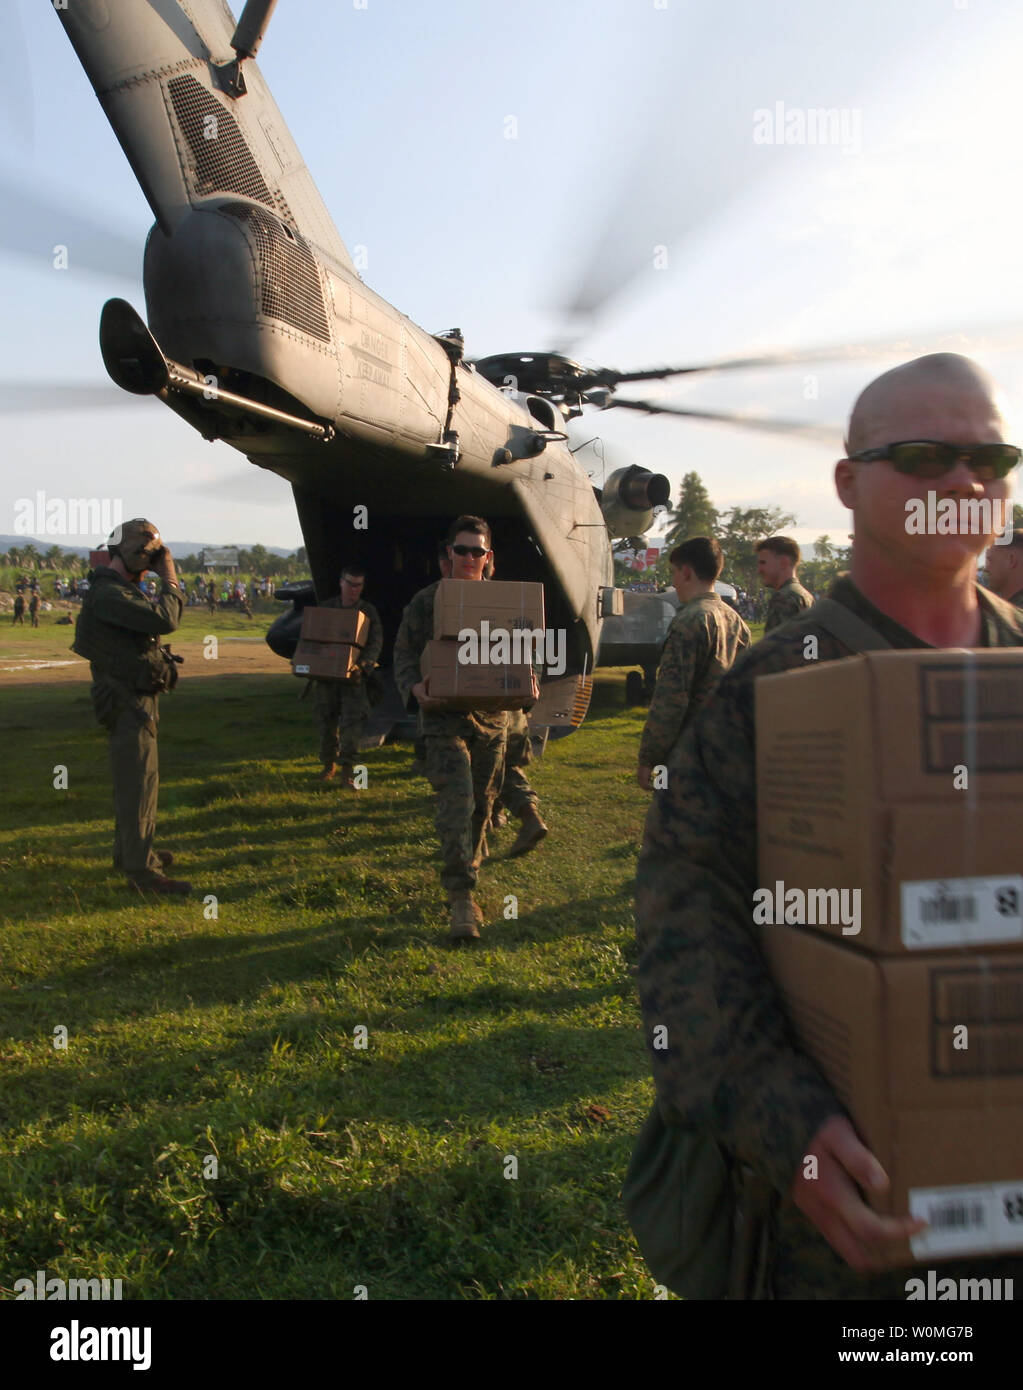 Marines décharger les rations prêtes à manger de l'arrière d'un CH-53E Super Stallion pour les victimes du séisme à Léogâne, Haïti le 20 janvier 2010. Les unités de toutes les branches de l'armée américaine mènent des opérations de secours en cas de catastrophe humanitaire et dans le cadre de l'opération réponse unifiée après un séisme de magnitude 7,0 a ravagé Haïti le 12 janvier. UPI/Christopher M. Carroll/U.S. Marines. Banque D'Images